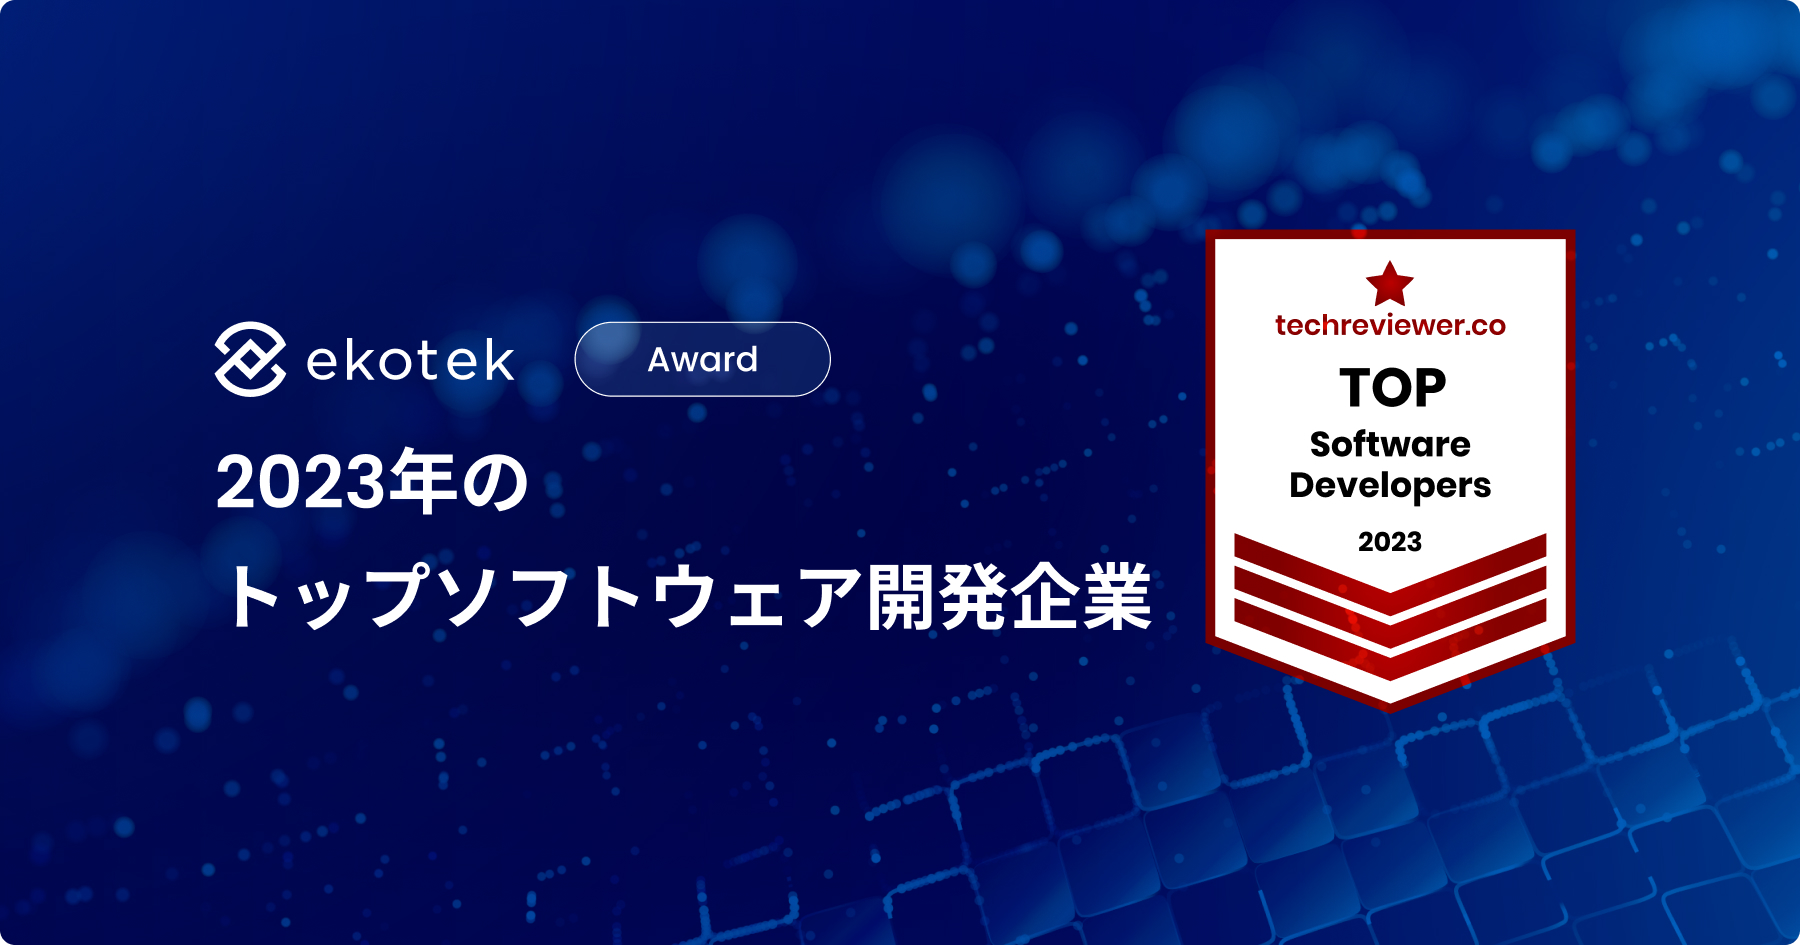 Ekotek Technology（イーコイオス・テクノロジー）、Techreviewer.coの2023年ソフトウェア開発企業トップリストに選出